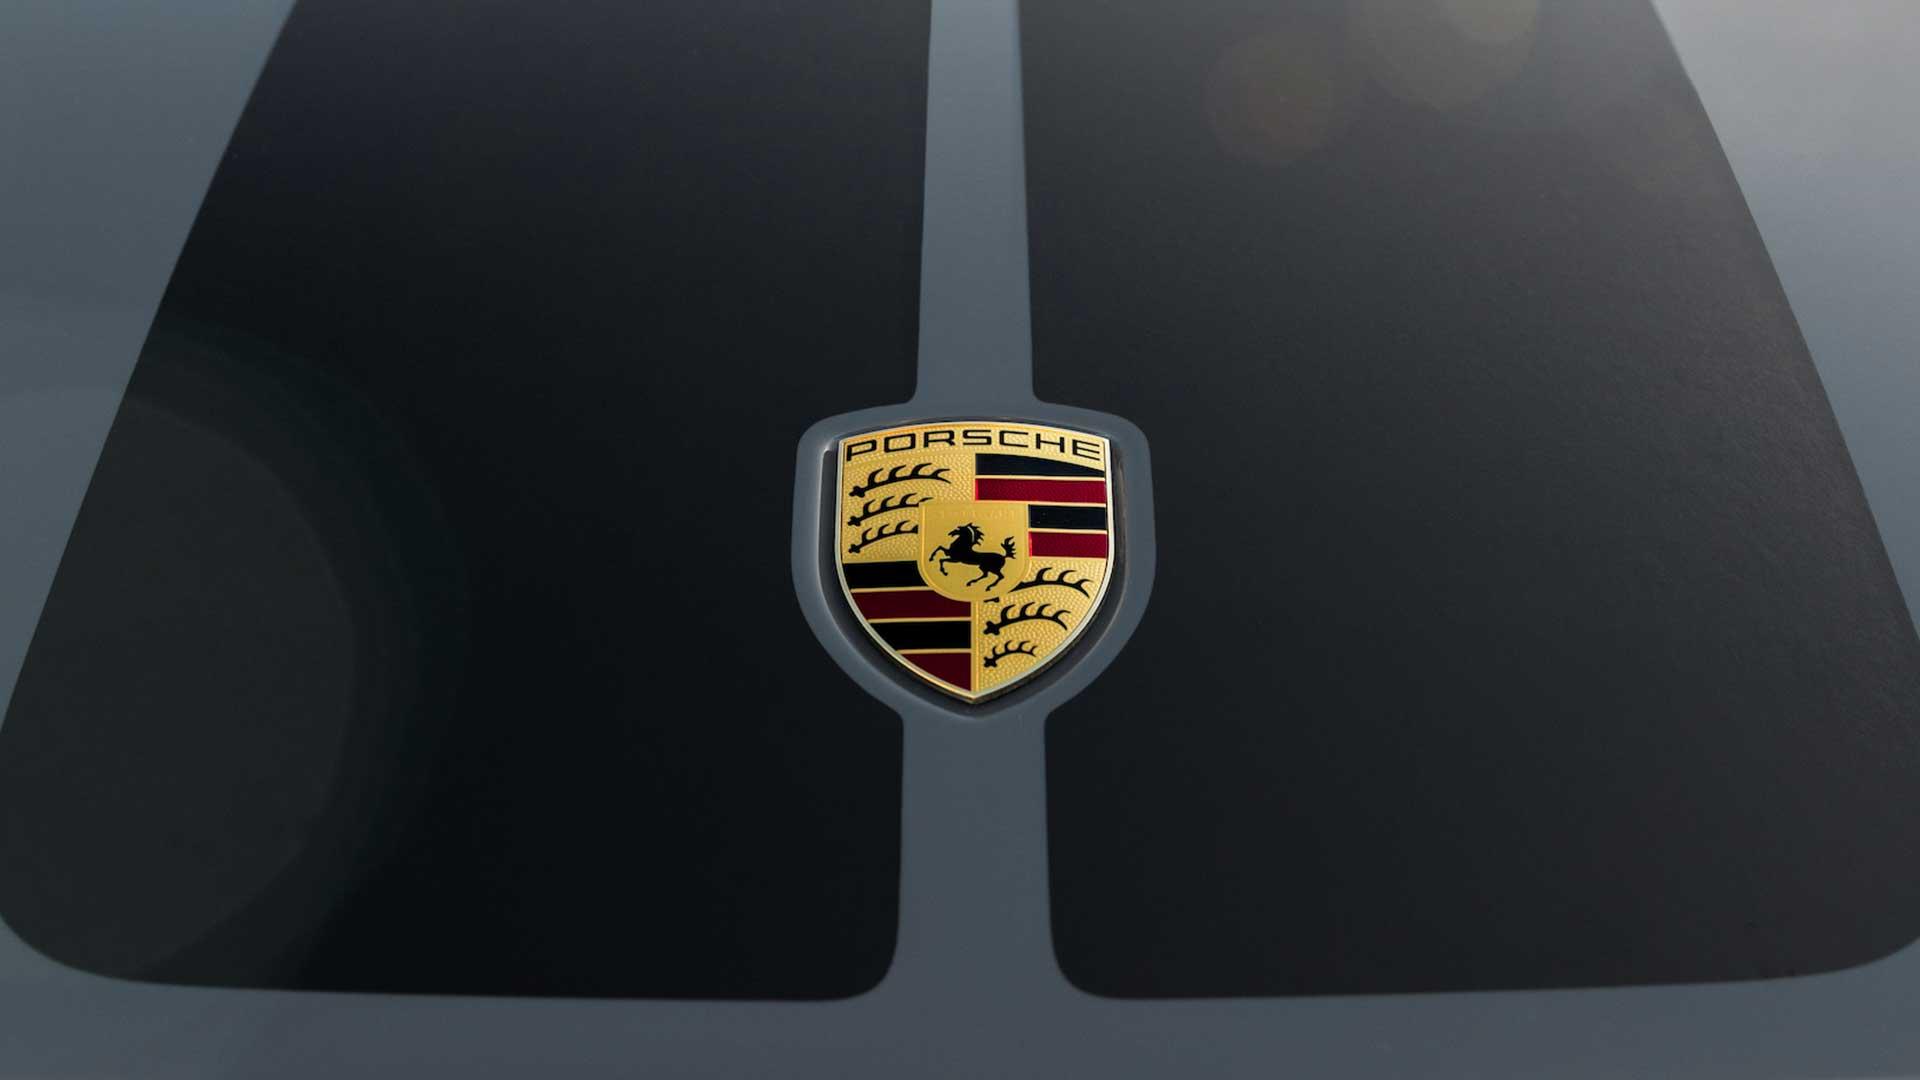 Porsche 911 Carrera 4 GTS bonnet logo